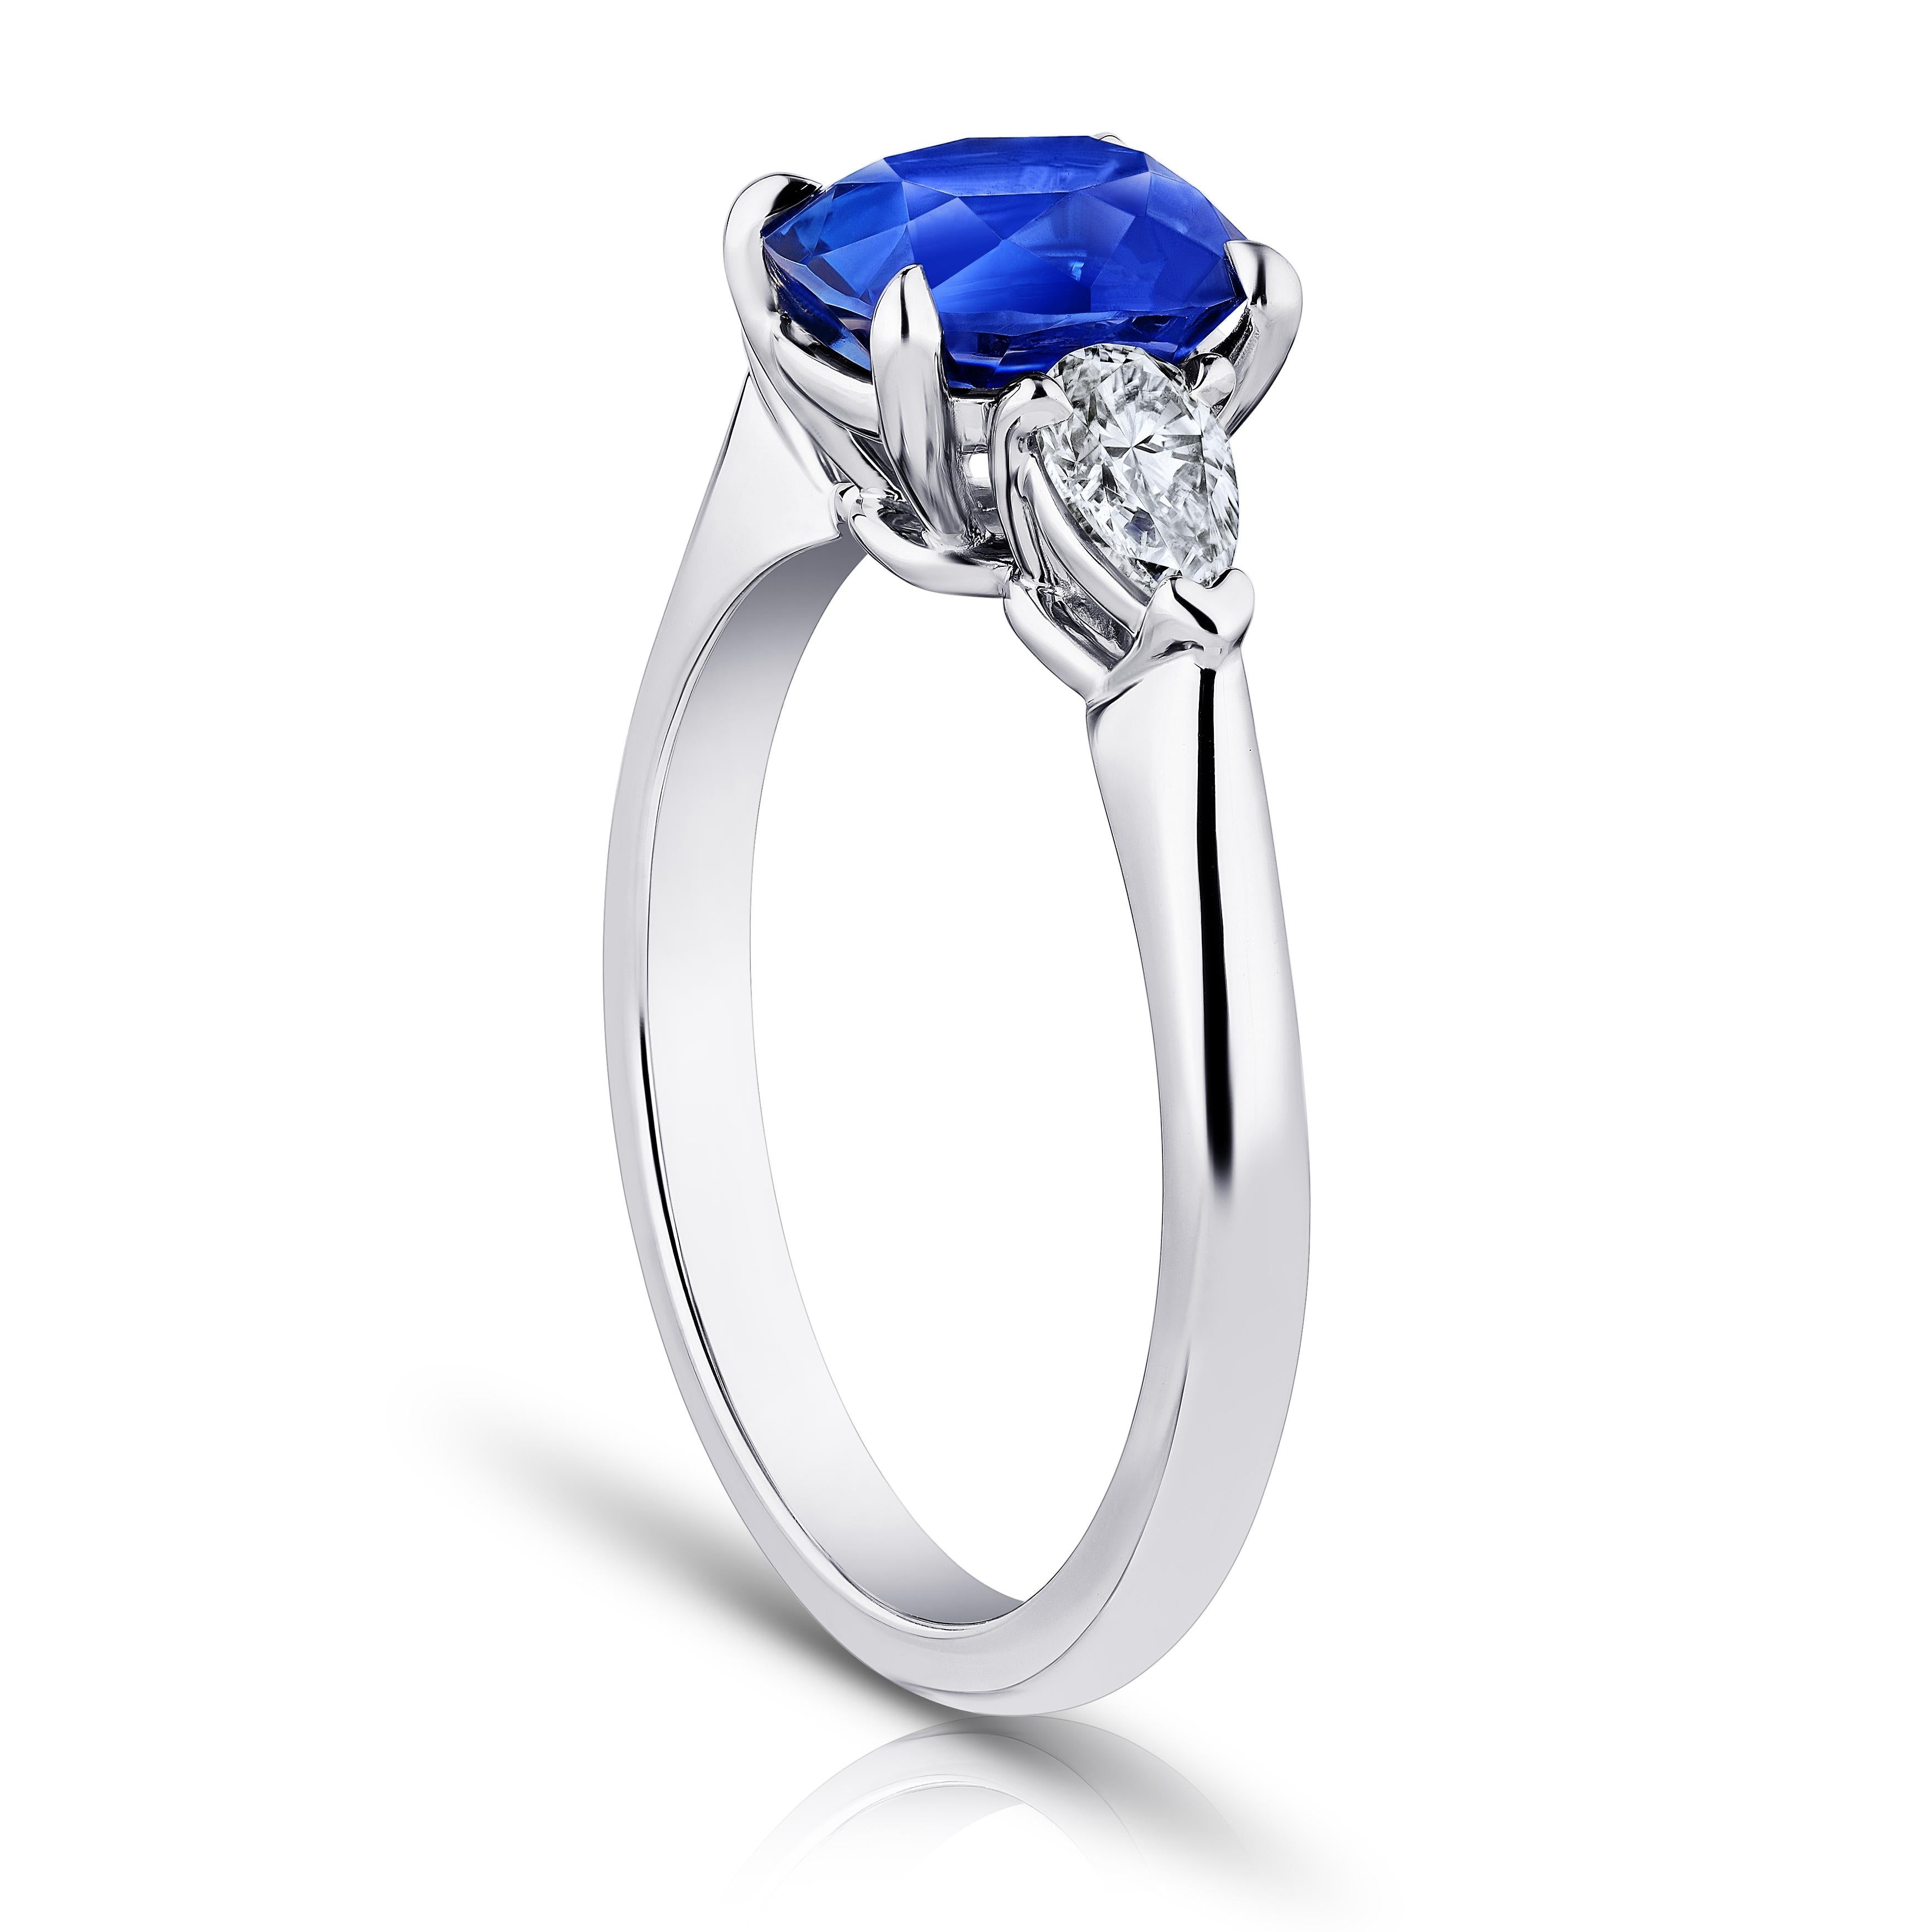 2.11 Karat kissenförmiger blauer Saphir mit birnenförmigen Diamanten von 0,49 Karat in einem Platinring gefasst. Größe 7.